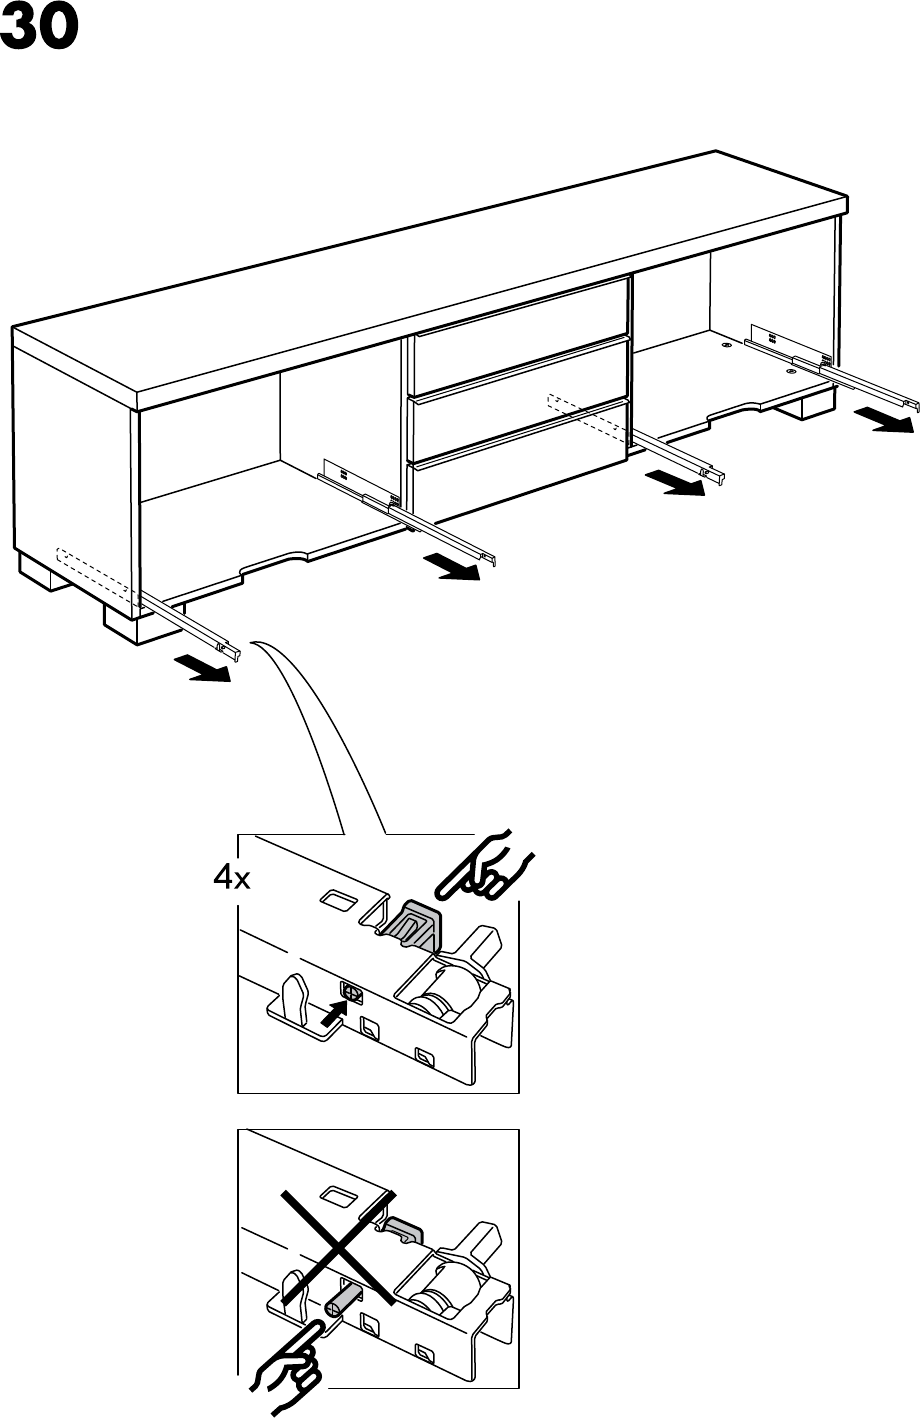 Voorspeller kleuring Pikken Manual Ikea BESTA BURS Tv-meubel (page 24 of 28) (All languages)